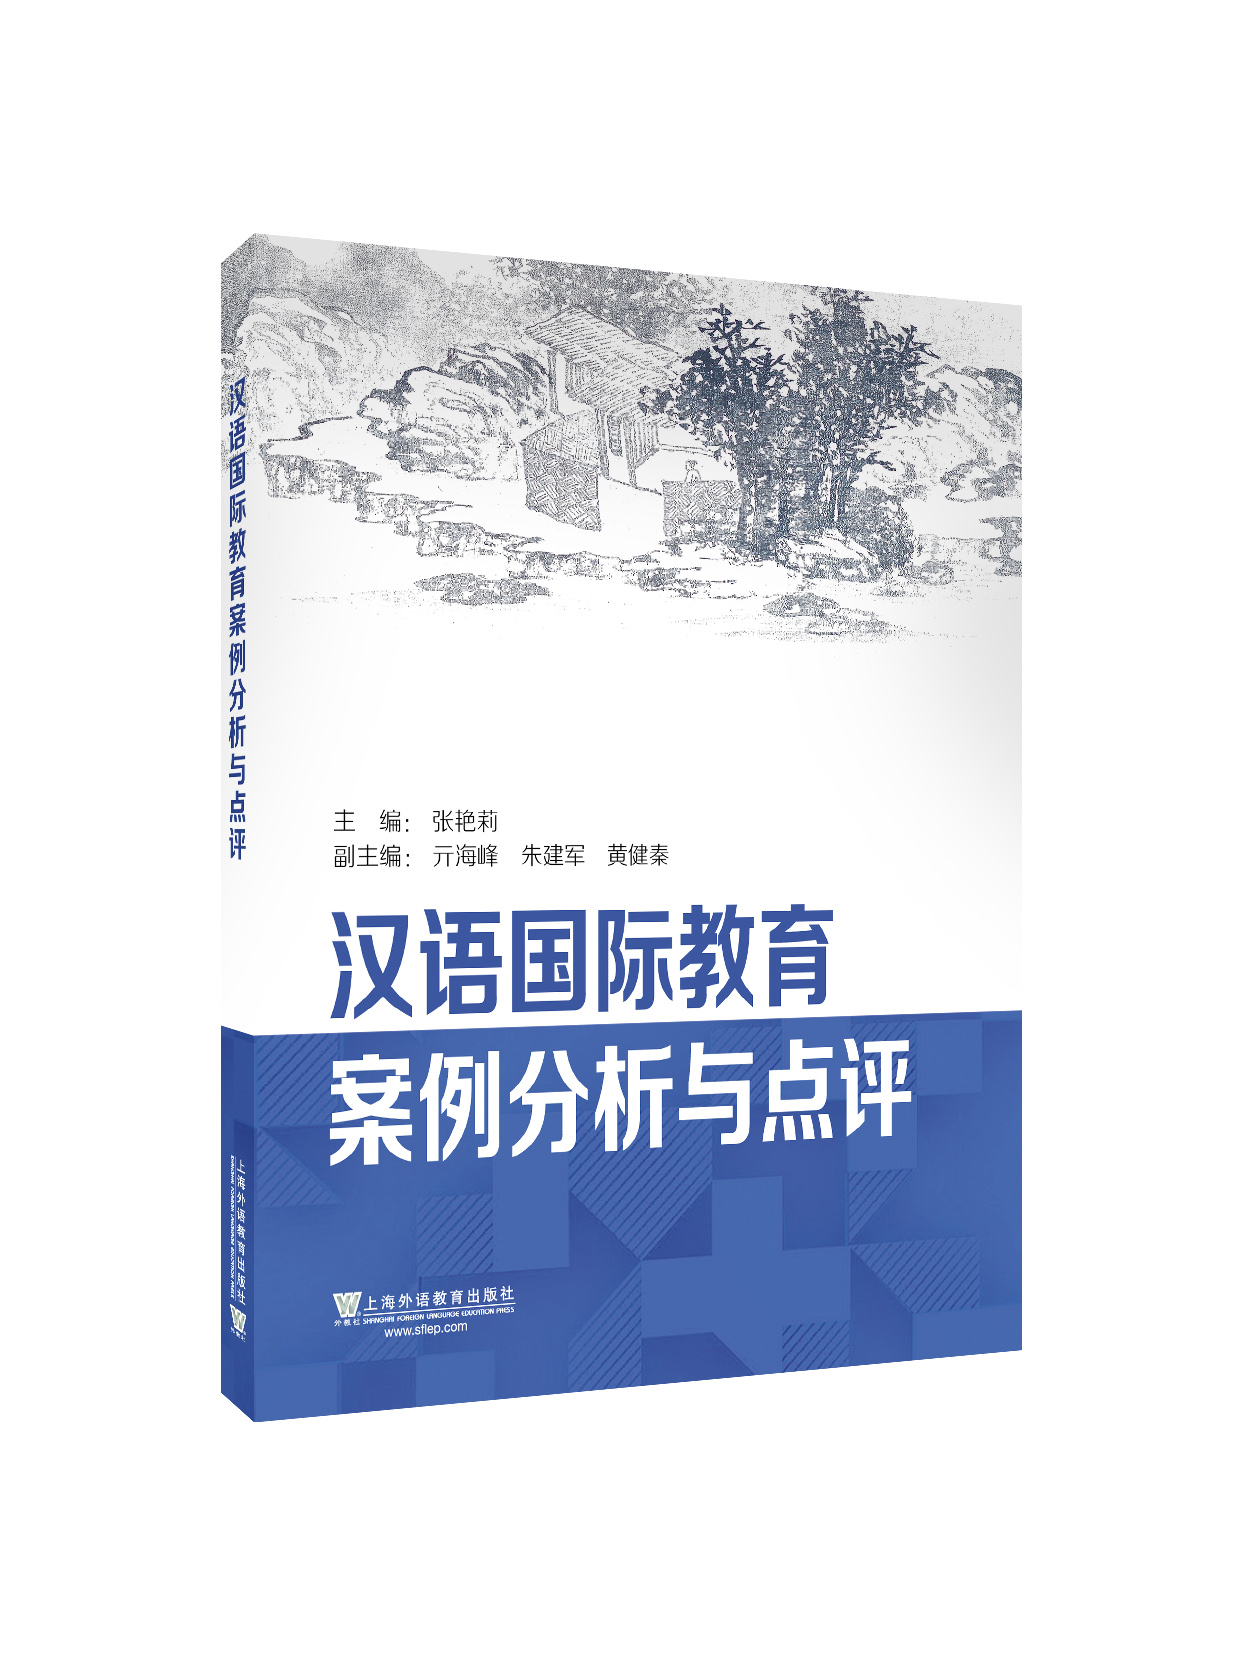 【新书上架】汉语国际教育案例分析与点评 张艳莉 对外汉语人俱乐部